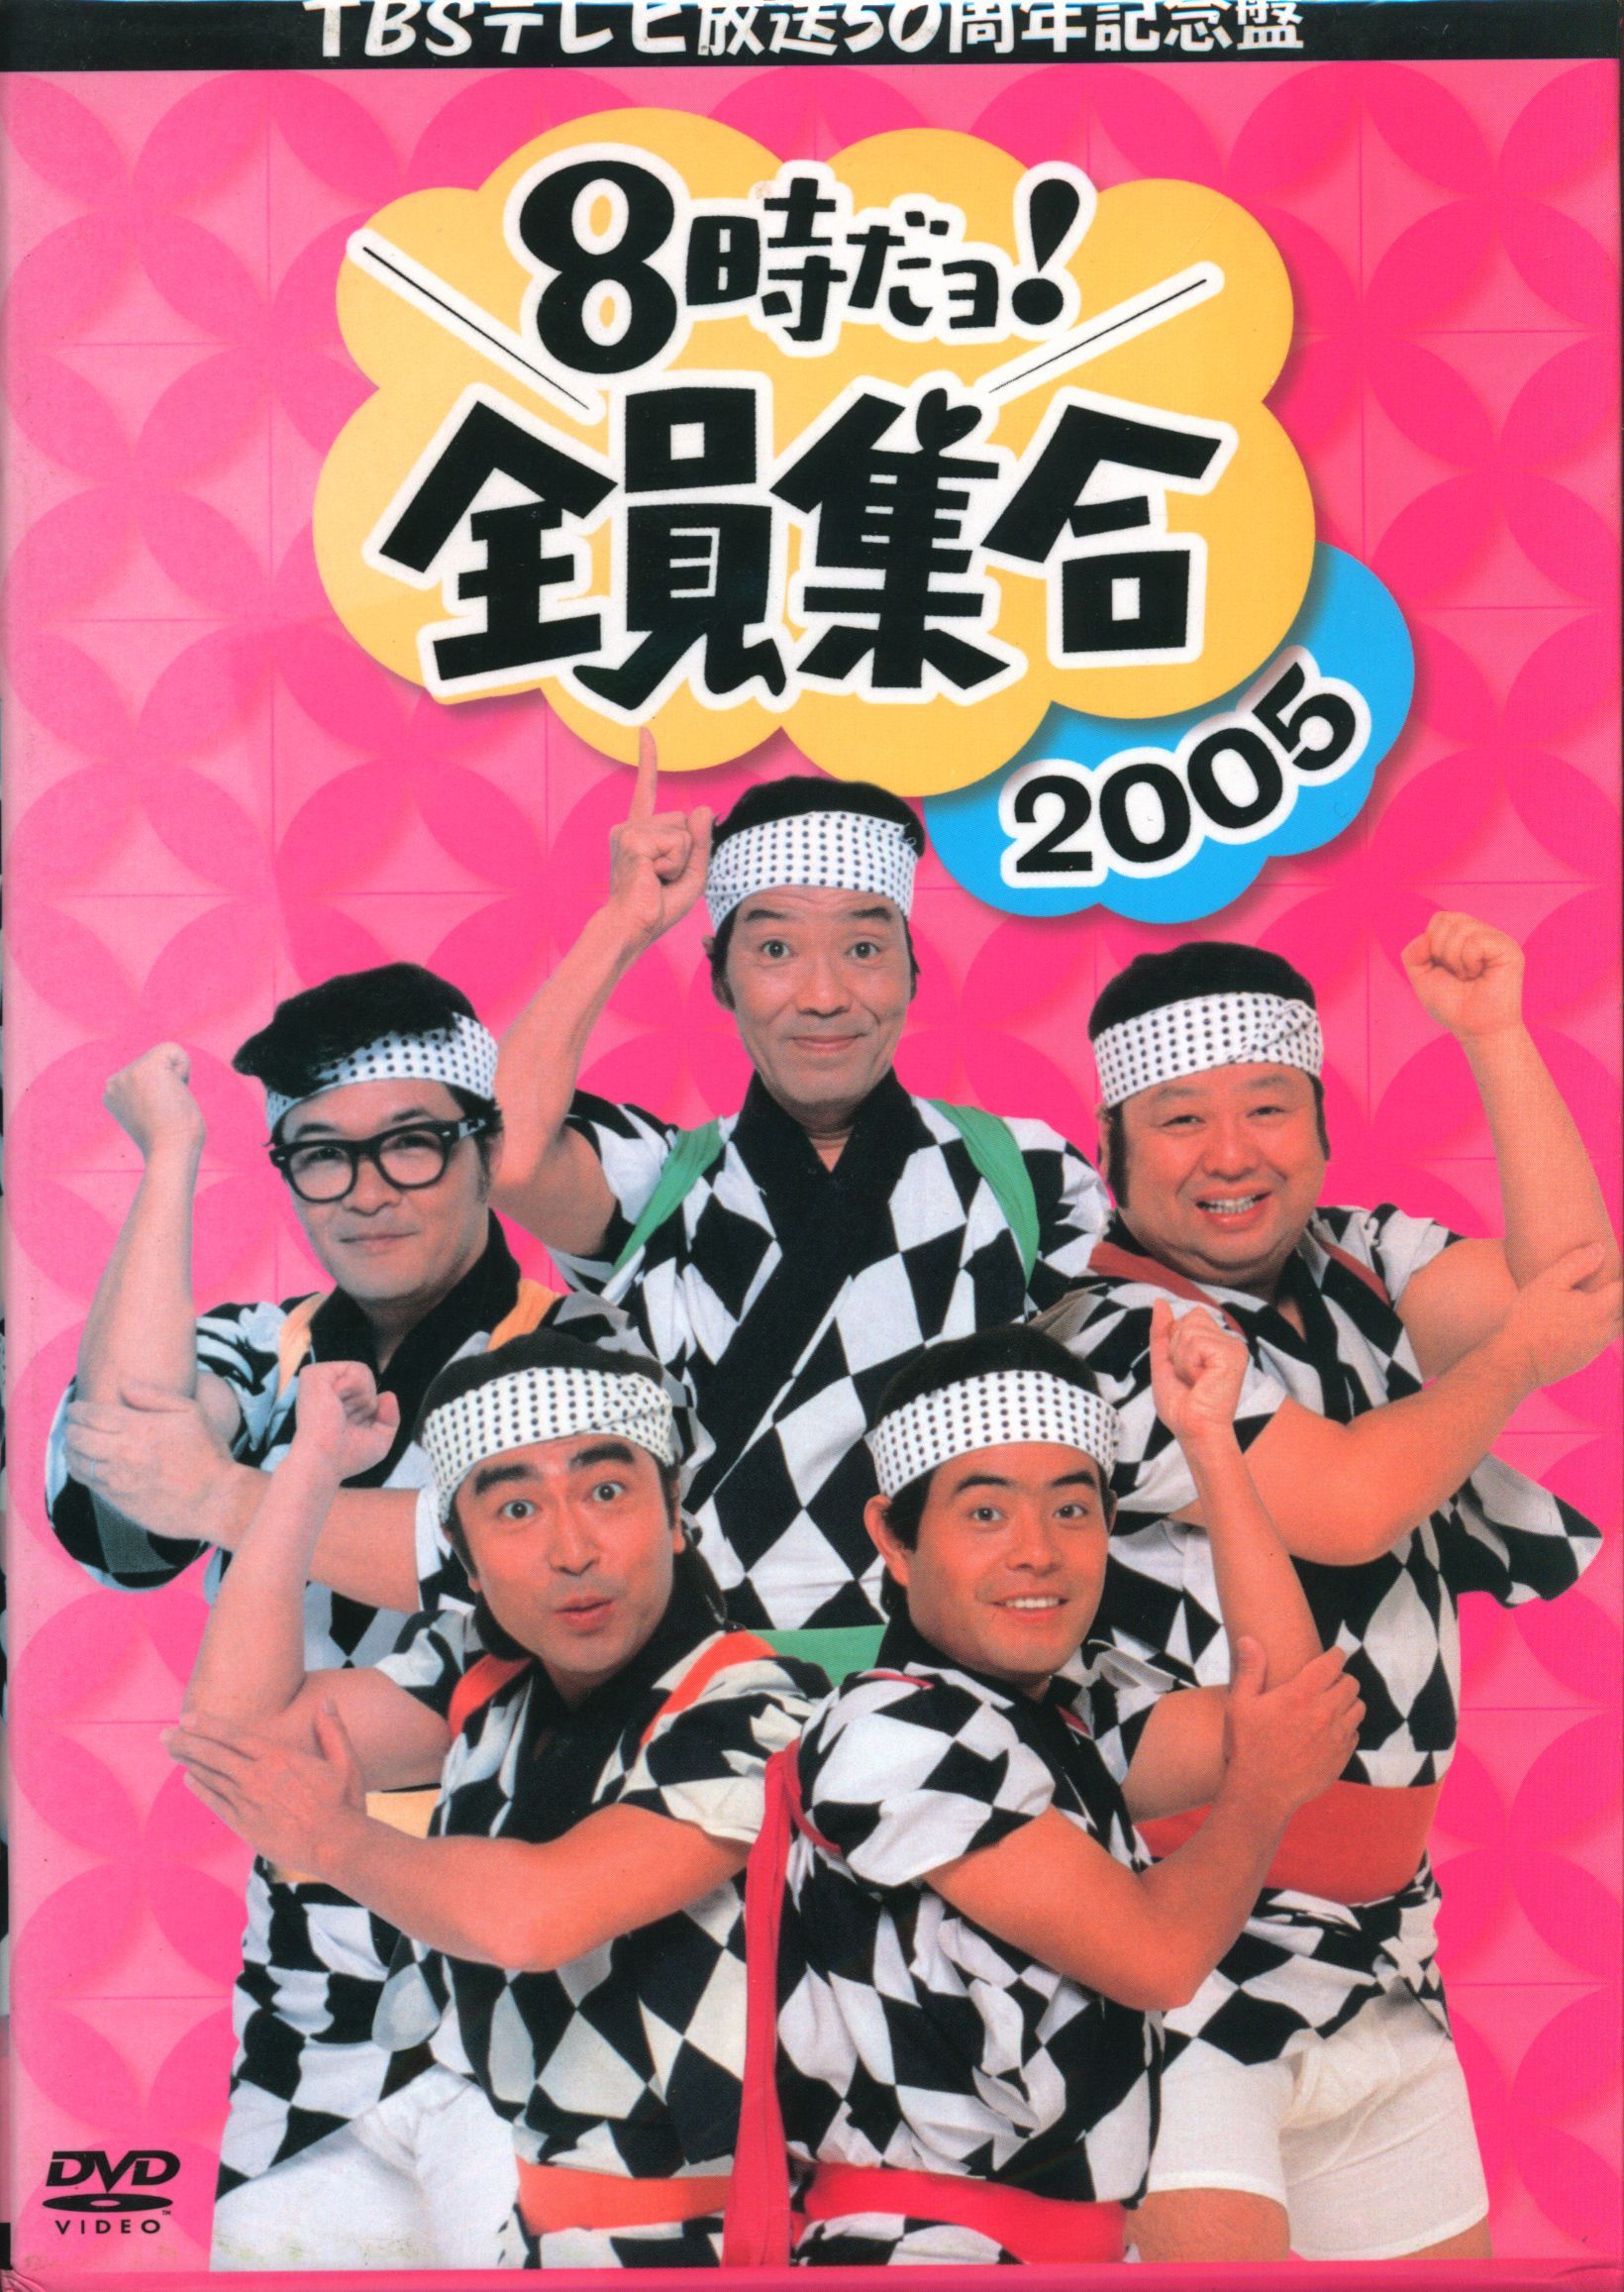 バラエティDVD 8時だヨ!全員集合 2005 DVD-BOX TBSテレビ放送50周年 ...